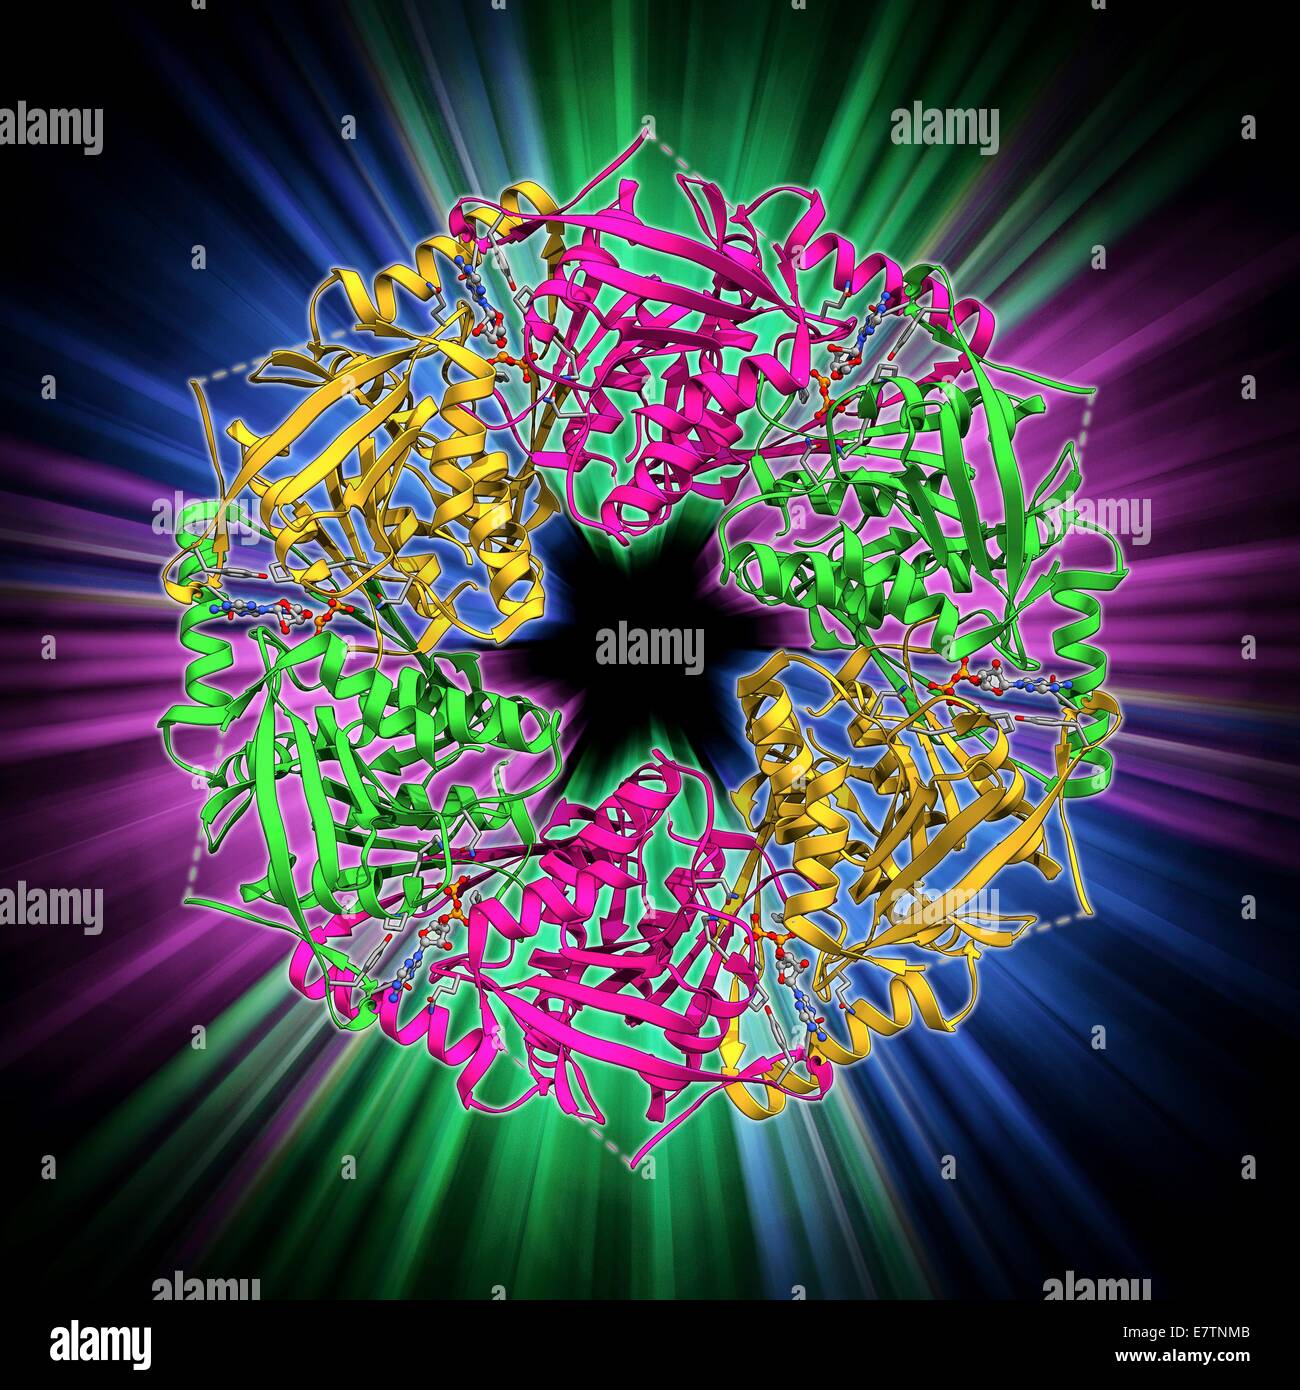 Bakteriophagen-ATPase. Molekulares Modell eines ATP-Synthase (ATPase) Moleküls von Phi 12 Bakteriophagen. ATPase ist ein wichtiges Enzym, die Energie für die Zellen durch die Synthese von Adenosintriphosphat (ATP) von Adenosin-diphosphat (ADP) liefert ein Stockfoto